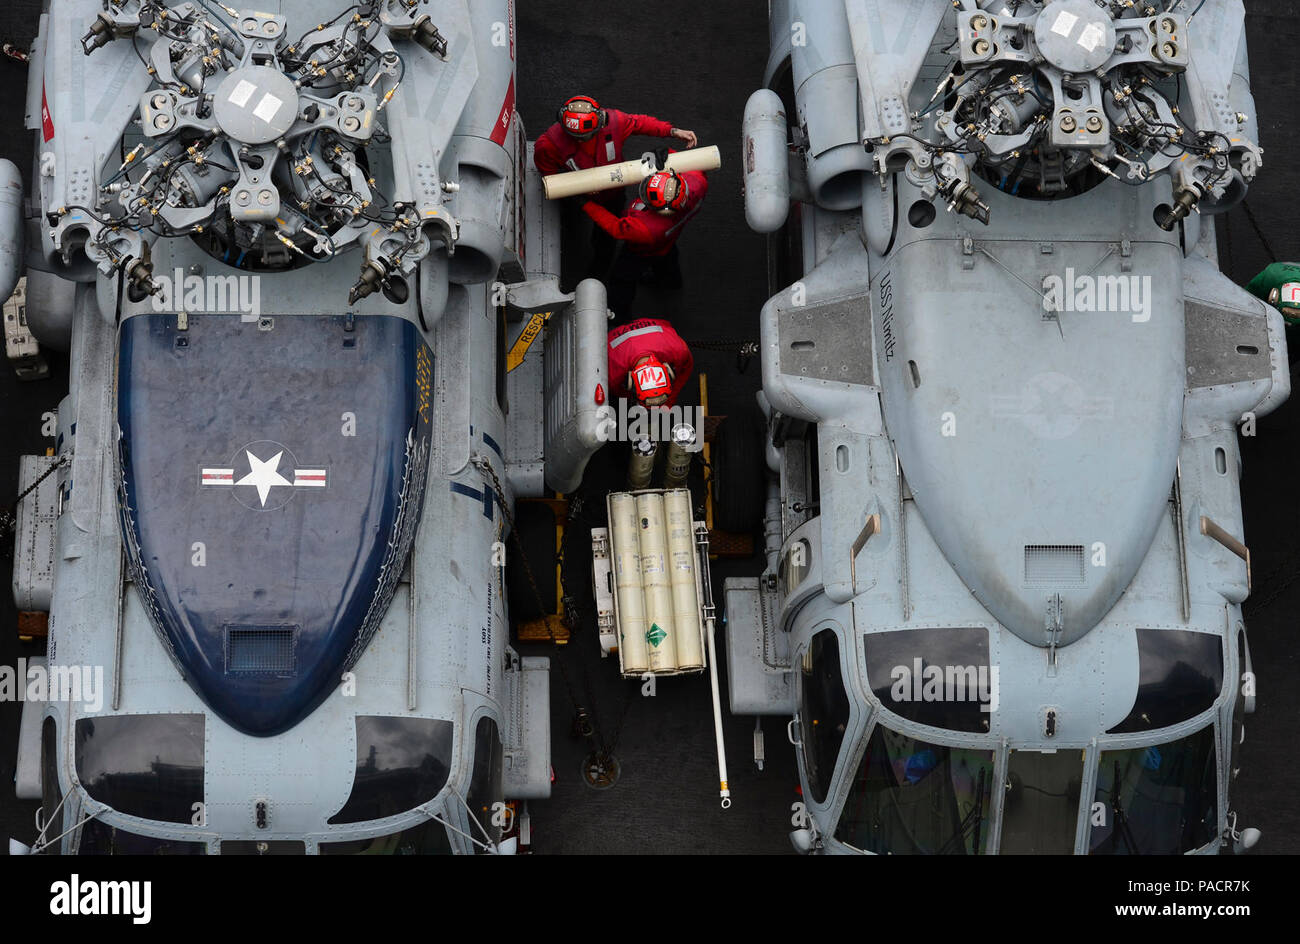 De Bengala (16 Julio 2017) Los marineros quitar sonobouys desde un MH-60R Sea Hawk helicóptero asignado al "Wolf Pack" huelga marítimo escuadrón de helicópteros (HSM) 75 en la cubierta de vuelo del portaaviones USS Nimitz (CVN 68) durante el ejercicio Malabar. Malabar 2017 es la última de una serie continua de ejercicios entre la marina de la India, el Japón fuerza de autodefensa marítima y la Marina de EE.UU. que ha crecido en alcance y complejidad a lo largo de los años para hacer frente a la gran variedad de amenazas comunes a la seguridad marítima en la región del Pacífico Indo-Asia. Foto de stock